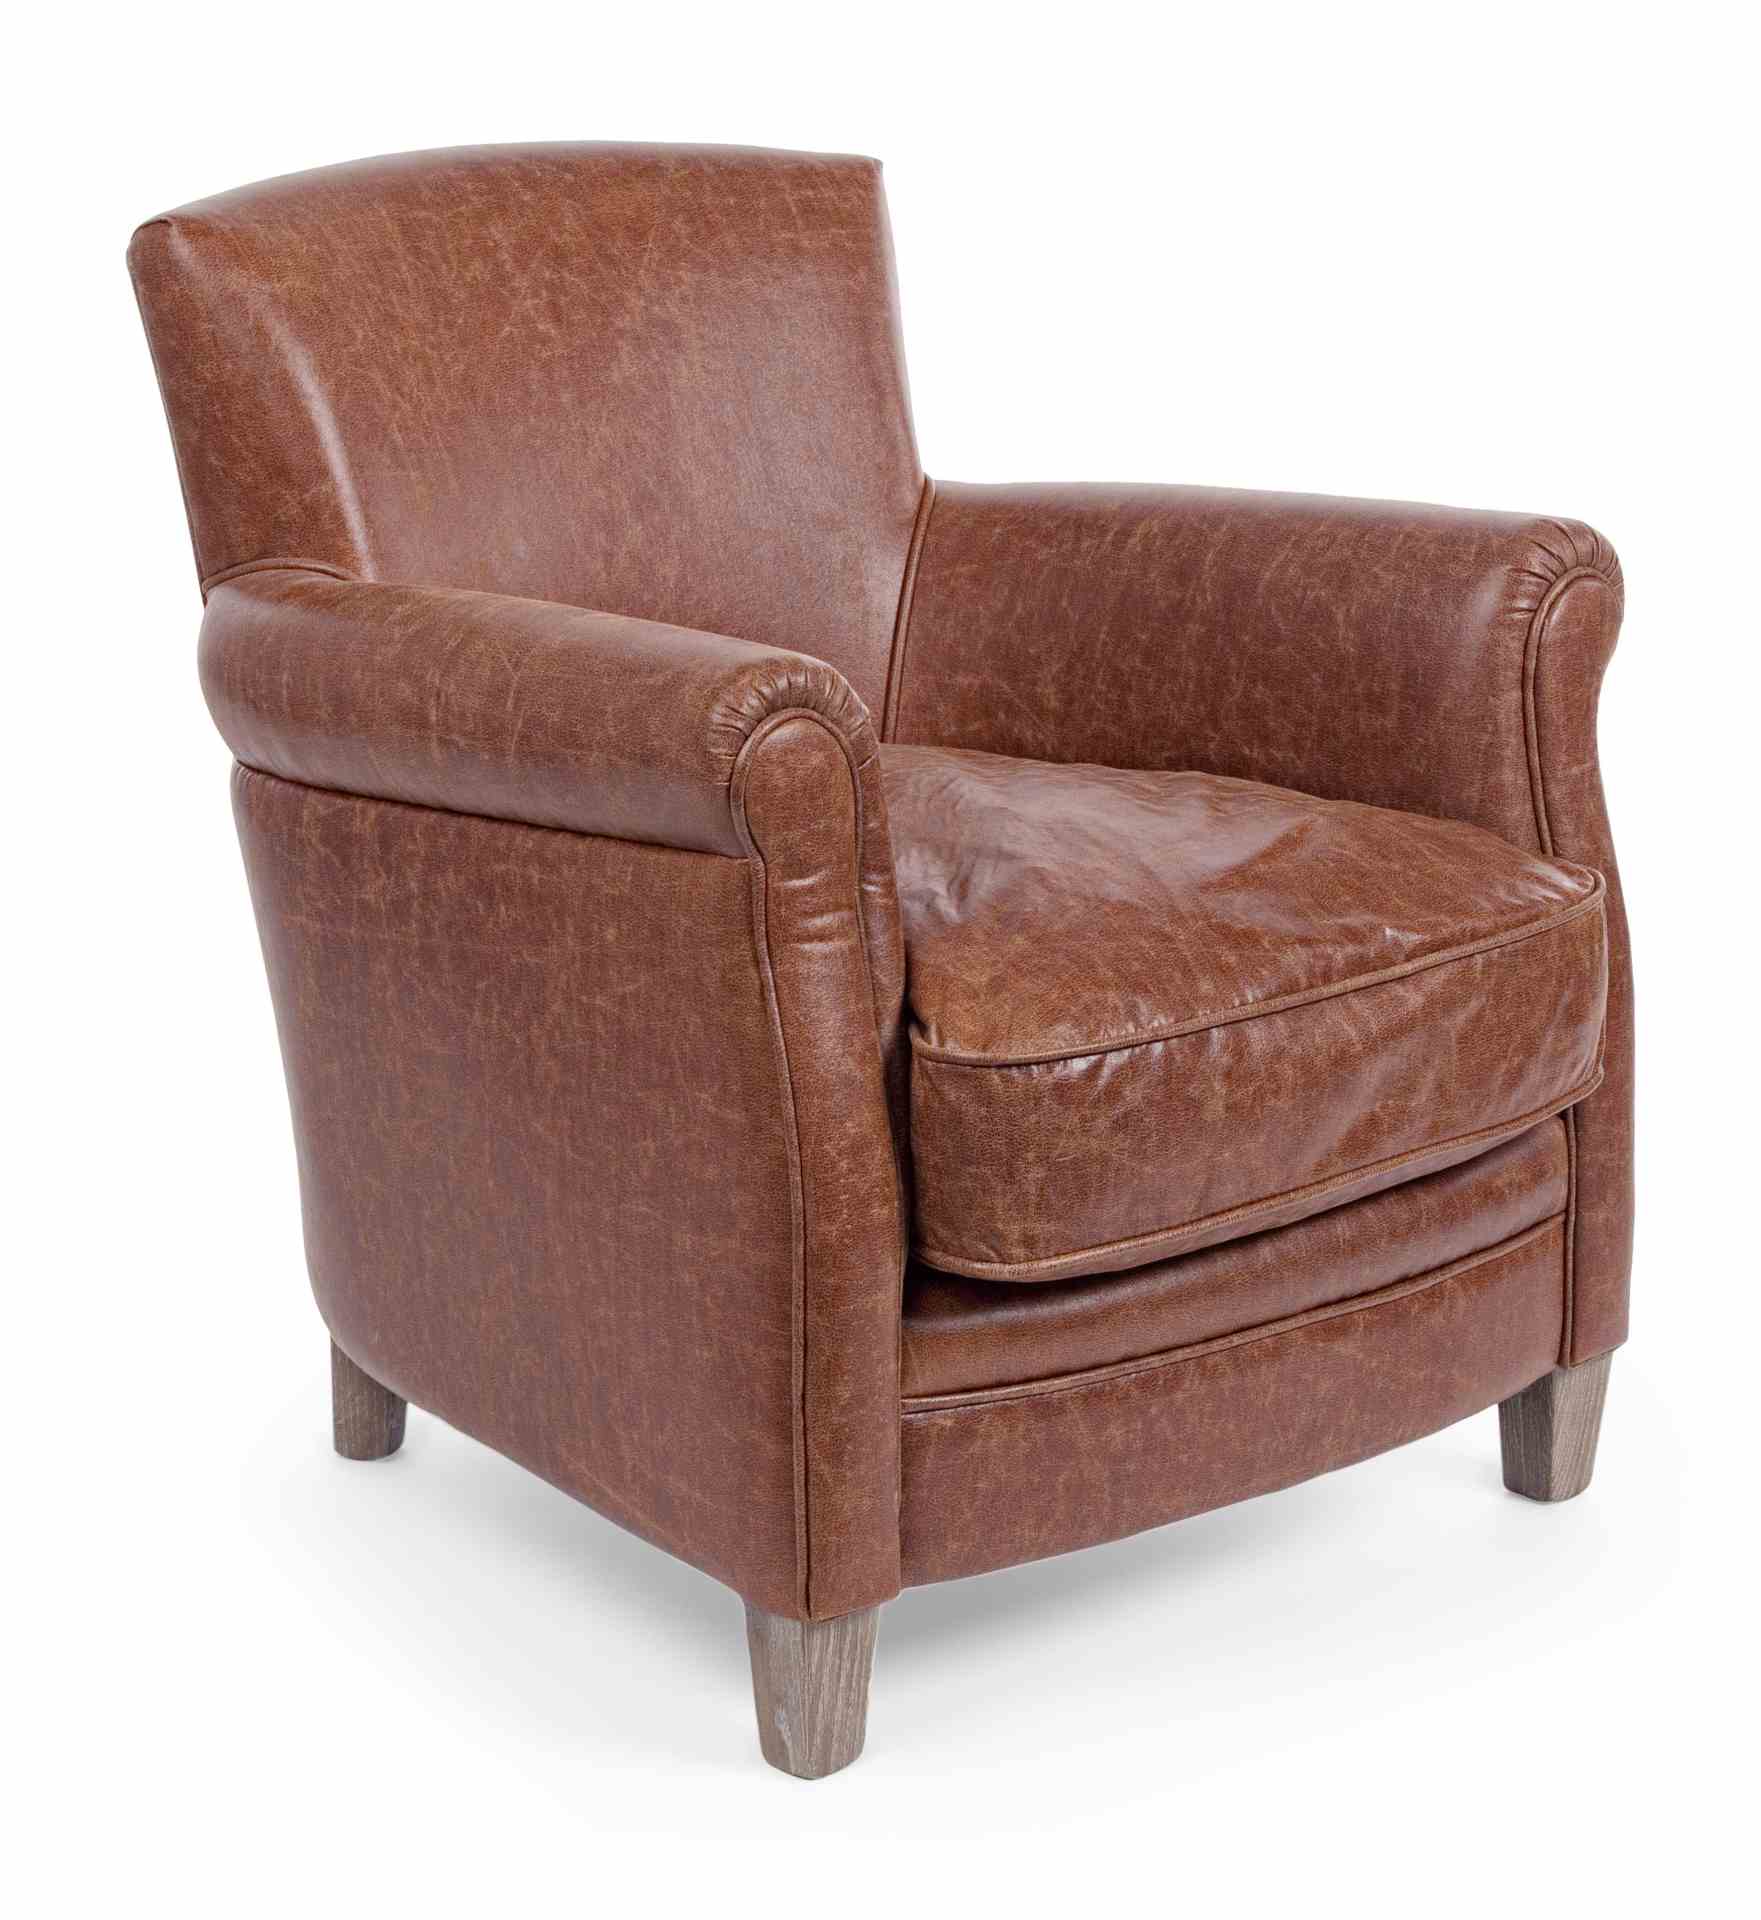 Der Sessel Nebraska überzeugt mit seinem klassischen Design. Gefertigt wurde er aus Kunstleder, welches einen Cognac Farbton besitzt. Das Gestell ist aus Eichenholz und hat eine natürliche Farbe. Der Sessel besitzt eine Sitzhöhe von 47 cm. Die Breite betr